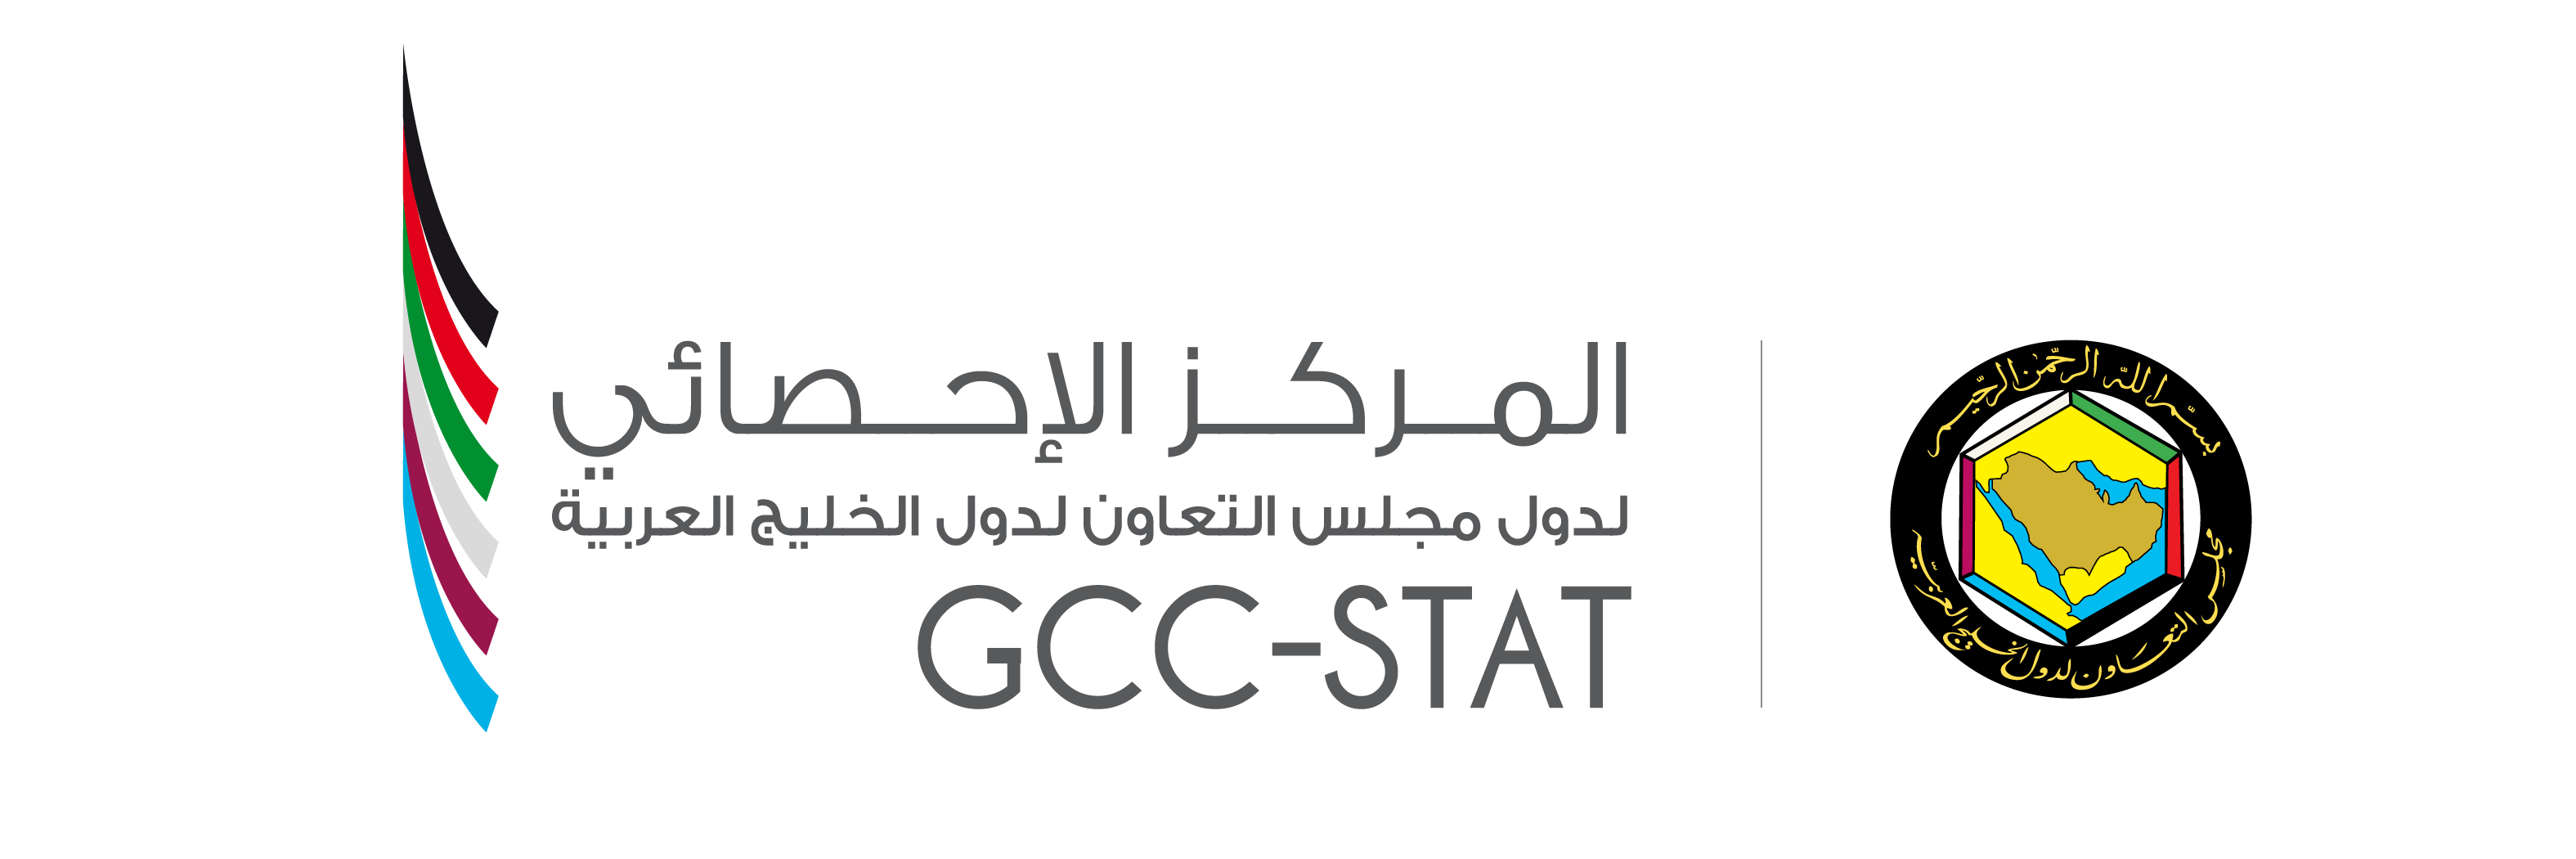 GCC-Stat